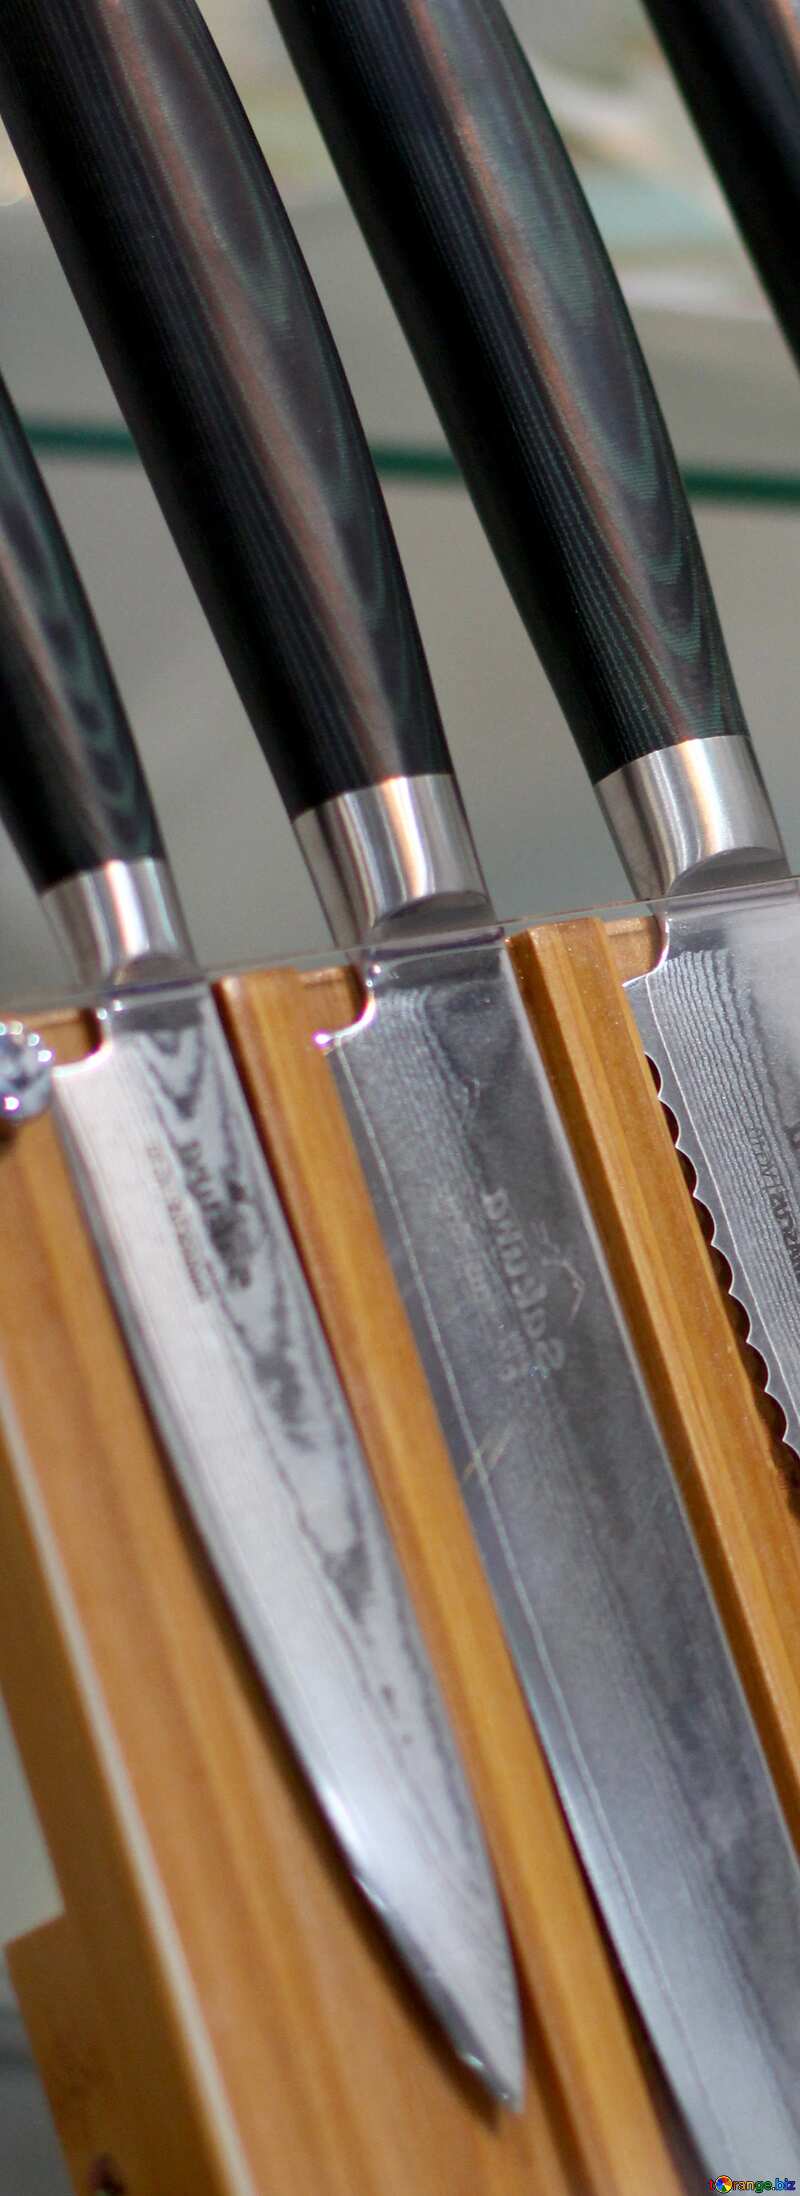 kitchen knives  №47199